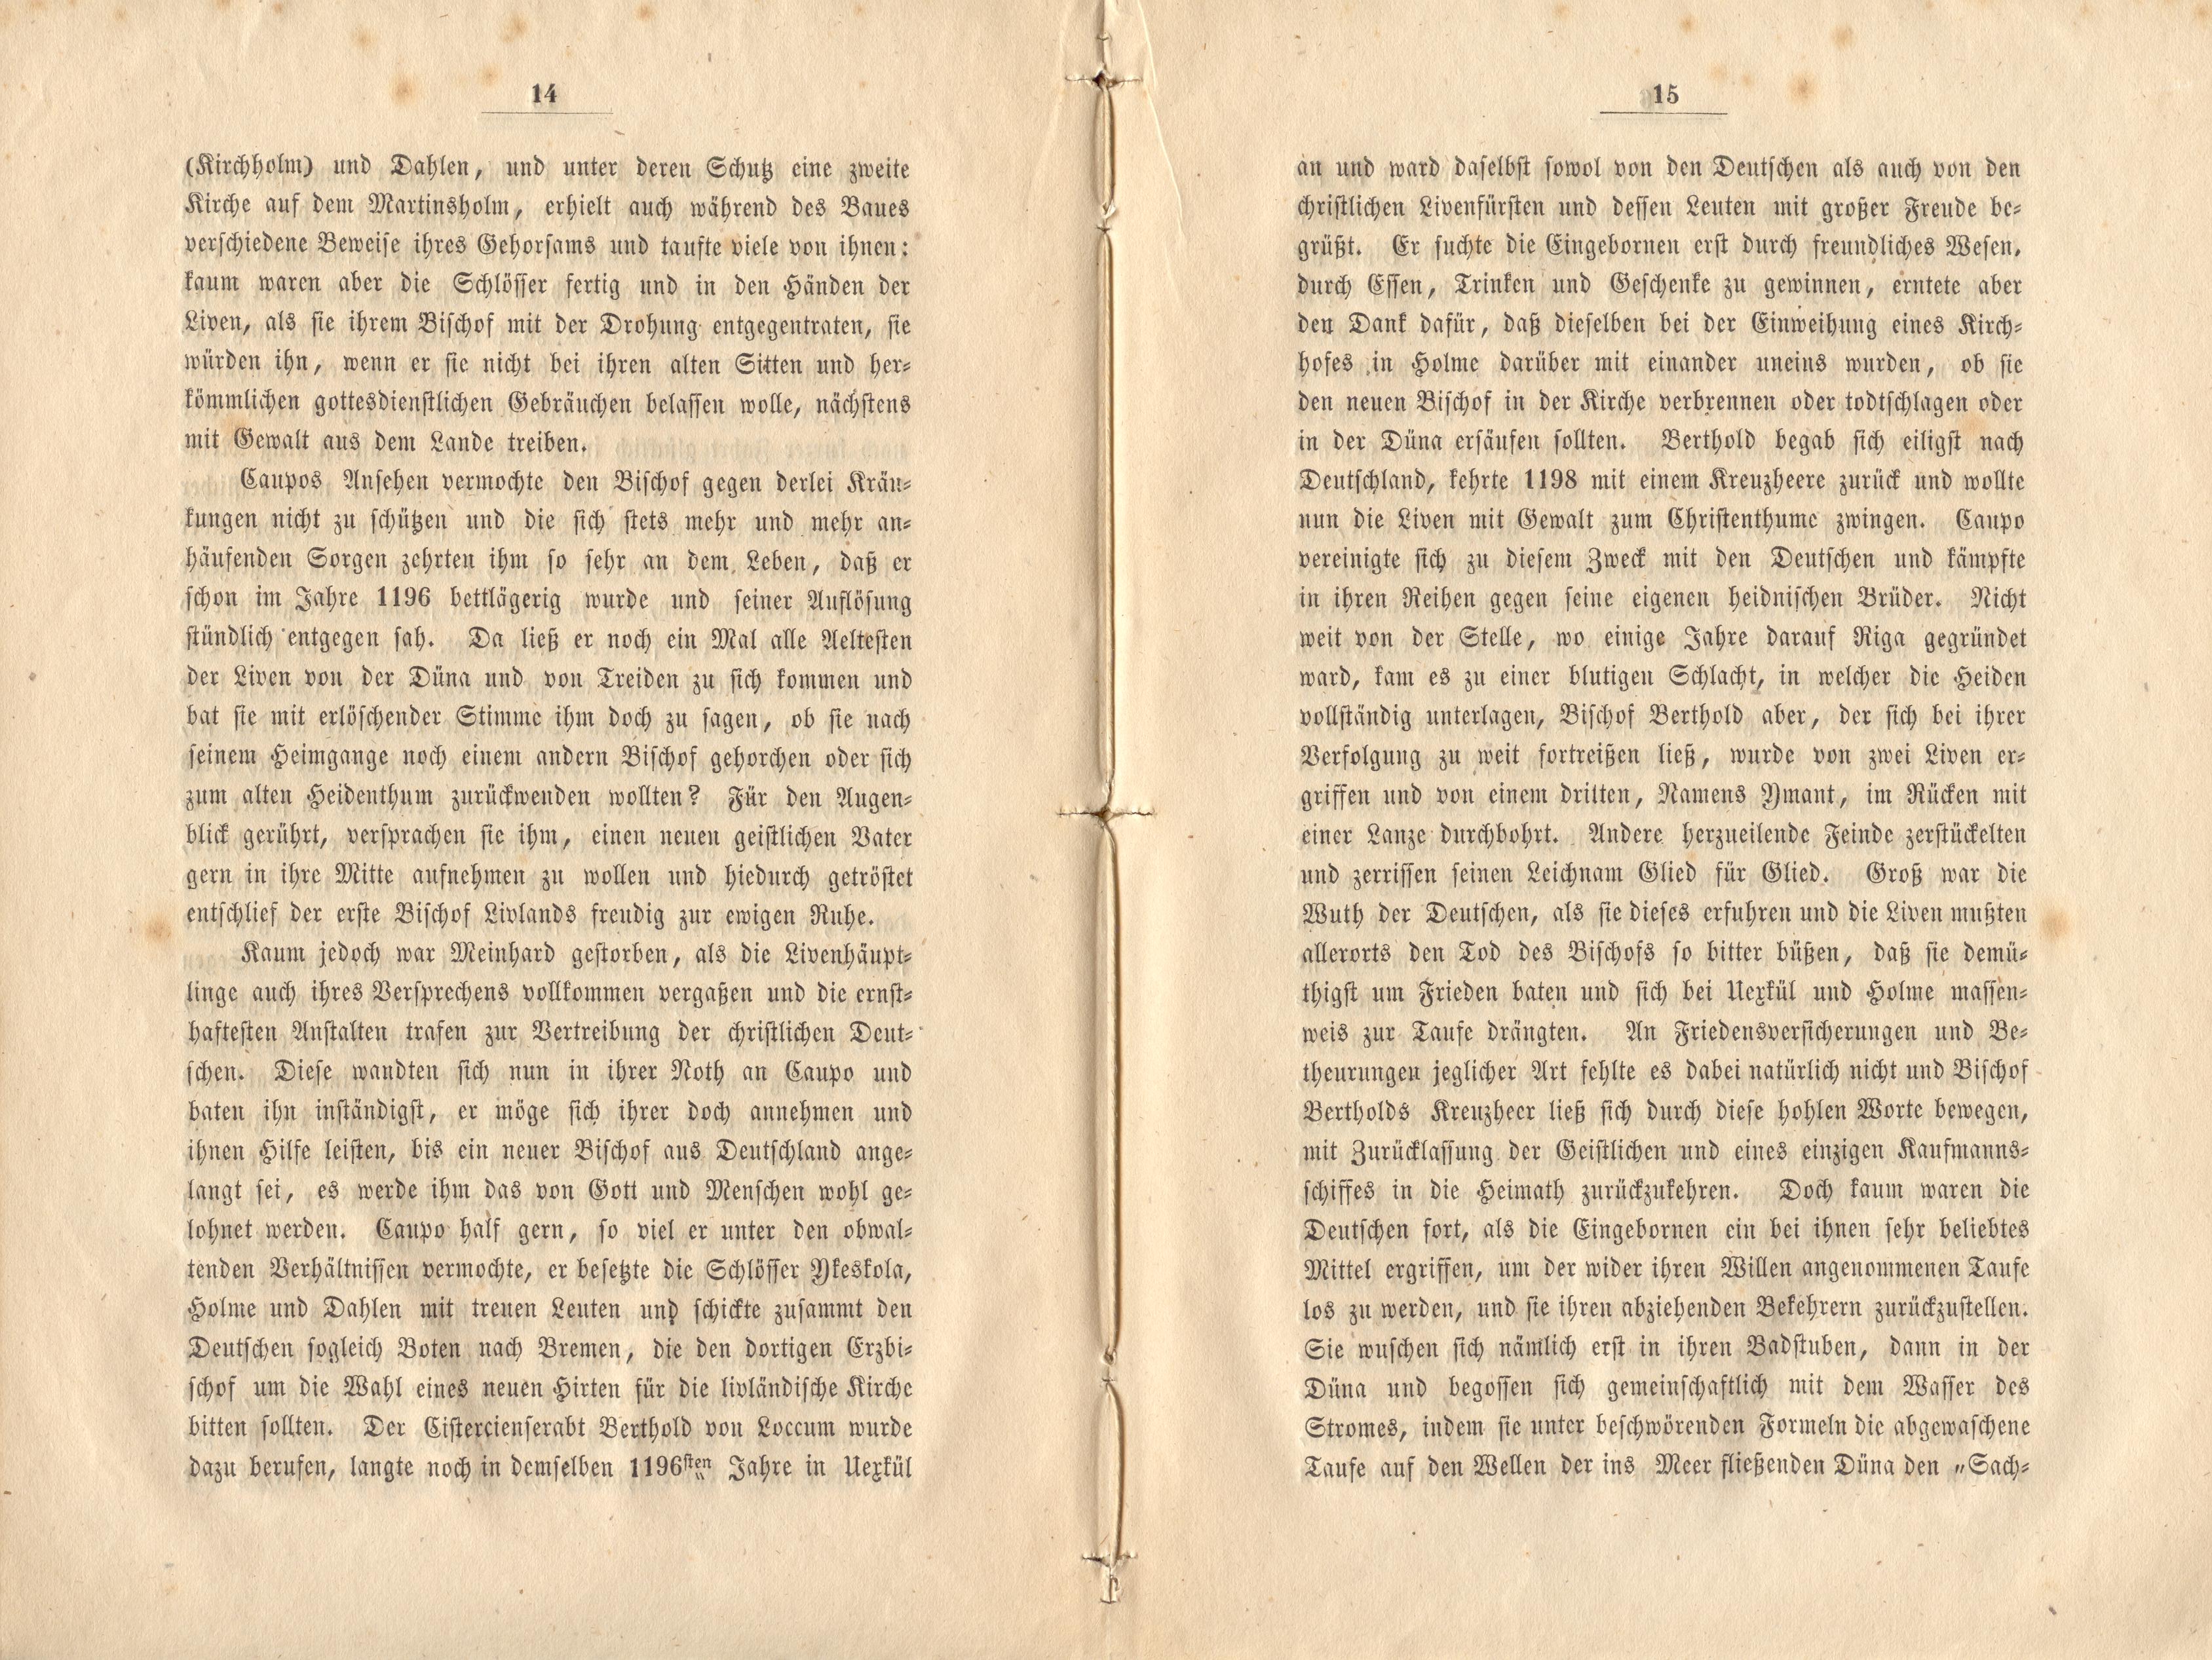 Felliner Blätter (1859) | 8. (14-15) Main body of text